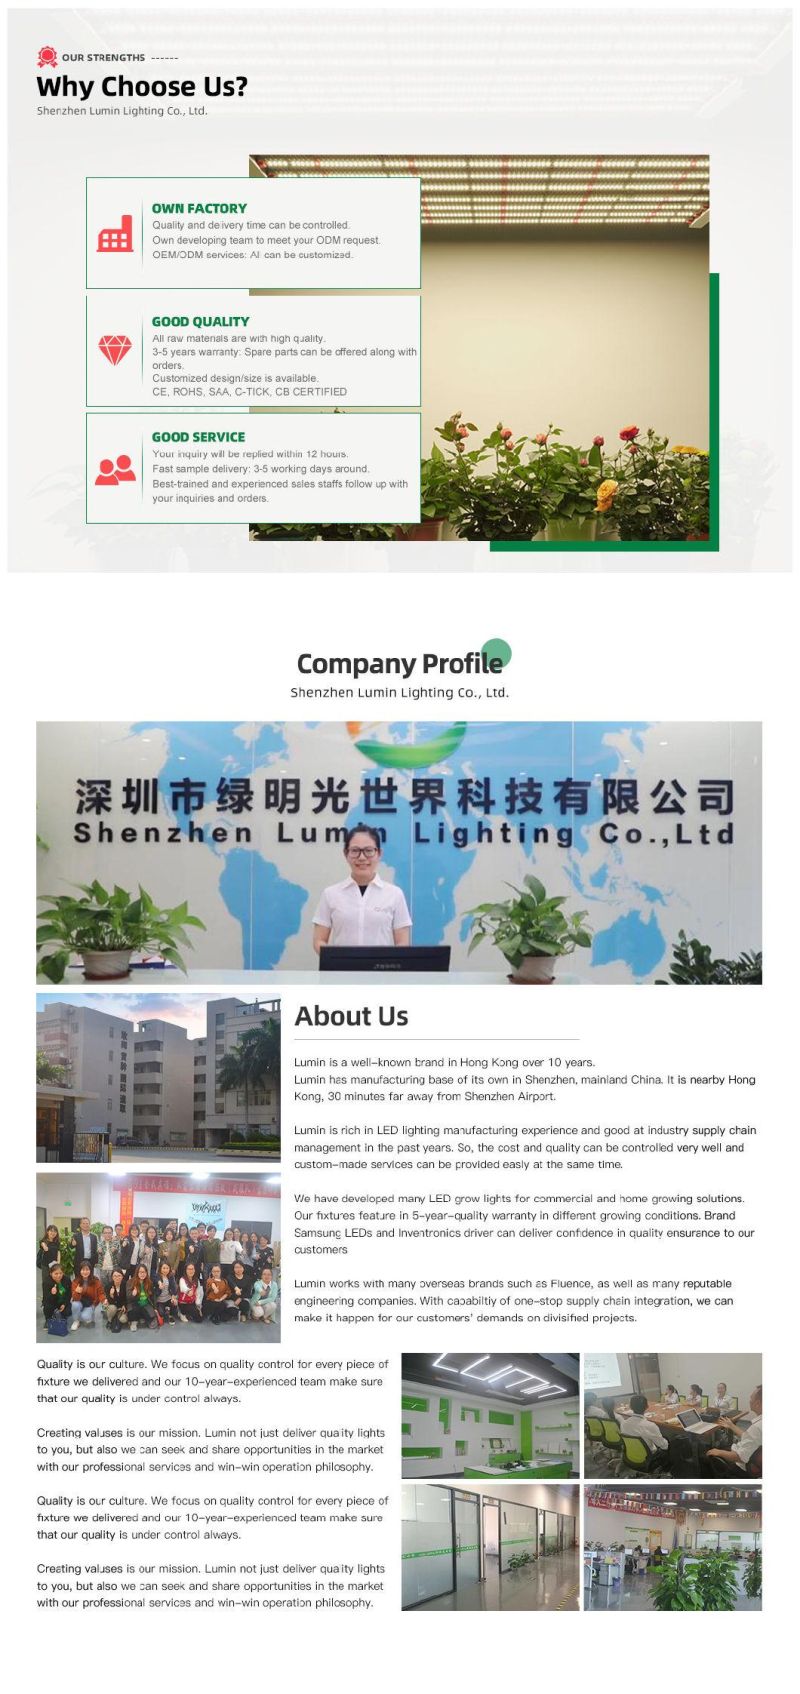 Ilummini 320W 3000K LED Grow Light Fixture for Horticulture Lighting